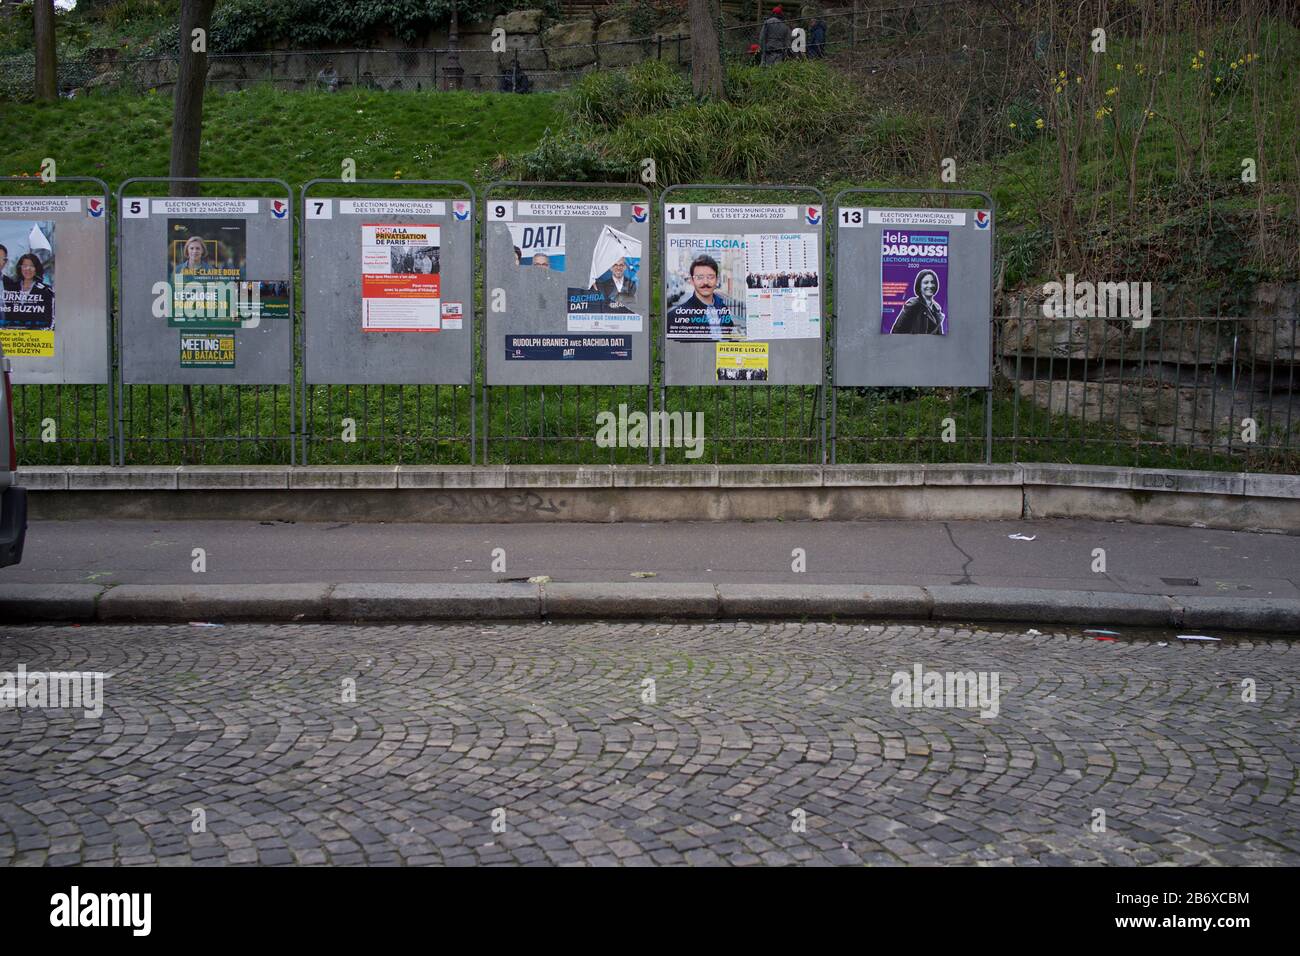 Visualizza i pannelli che mostrano i candidati elettorali in corso nelle elezioni comunali francesi, rue Ronsard, Montmartre, 75018 Parigi, Francia, marzo 2020 Foto Stock